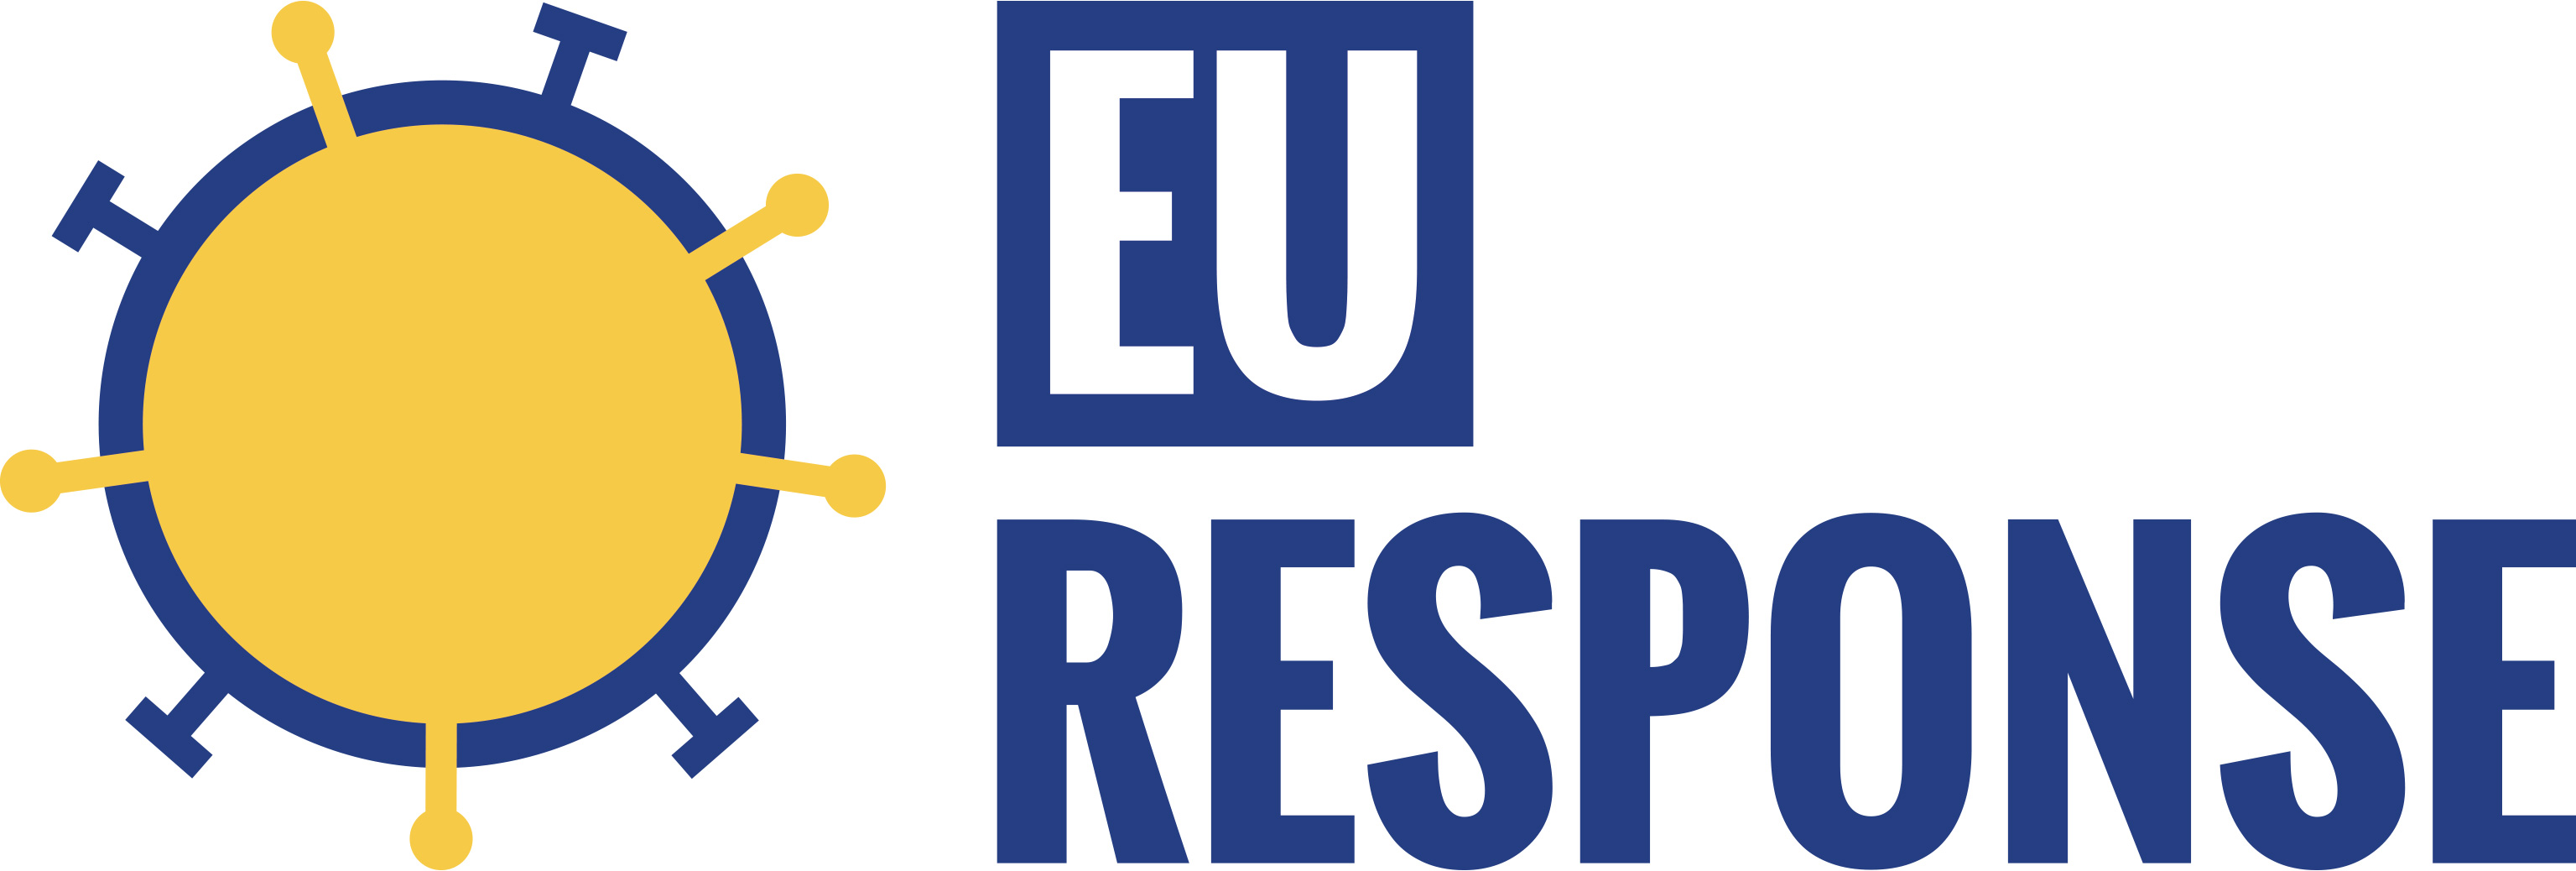 EU-RESPONSE logo